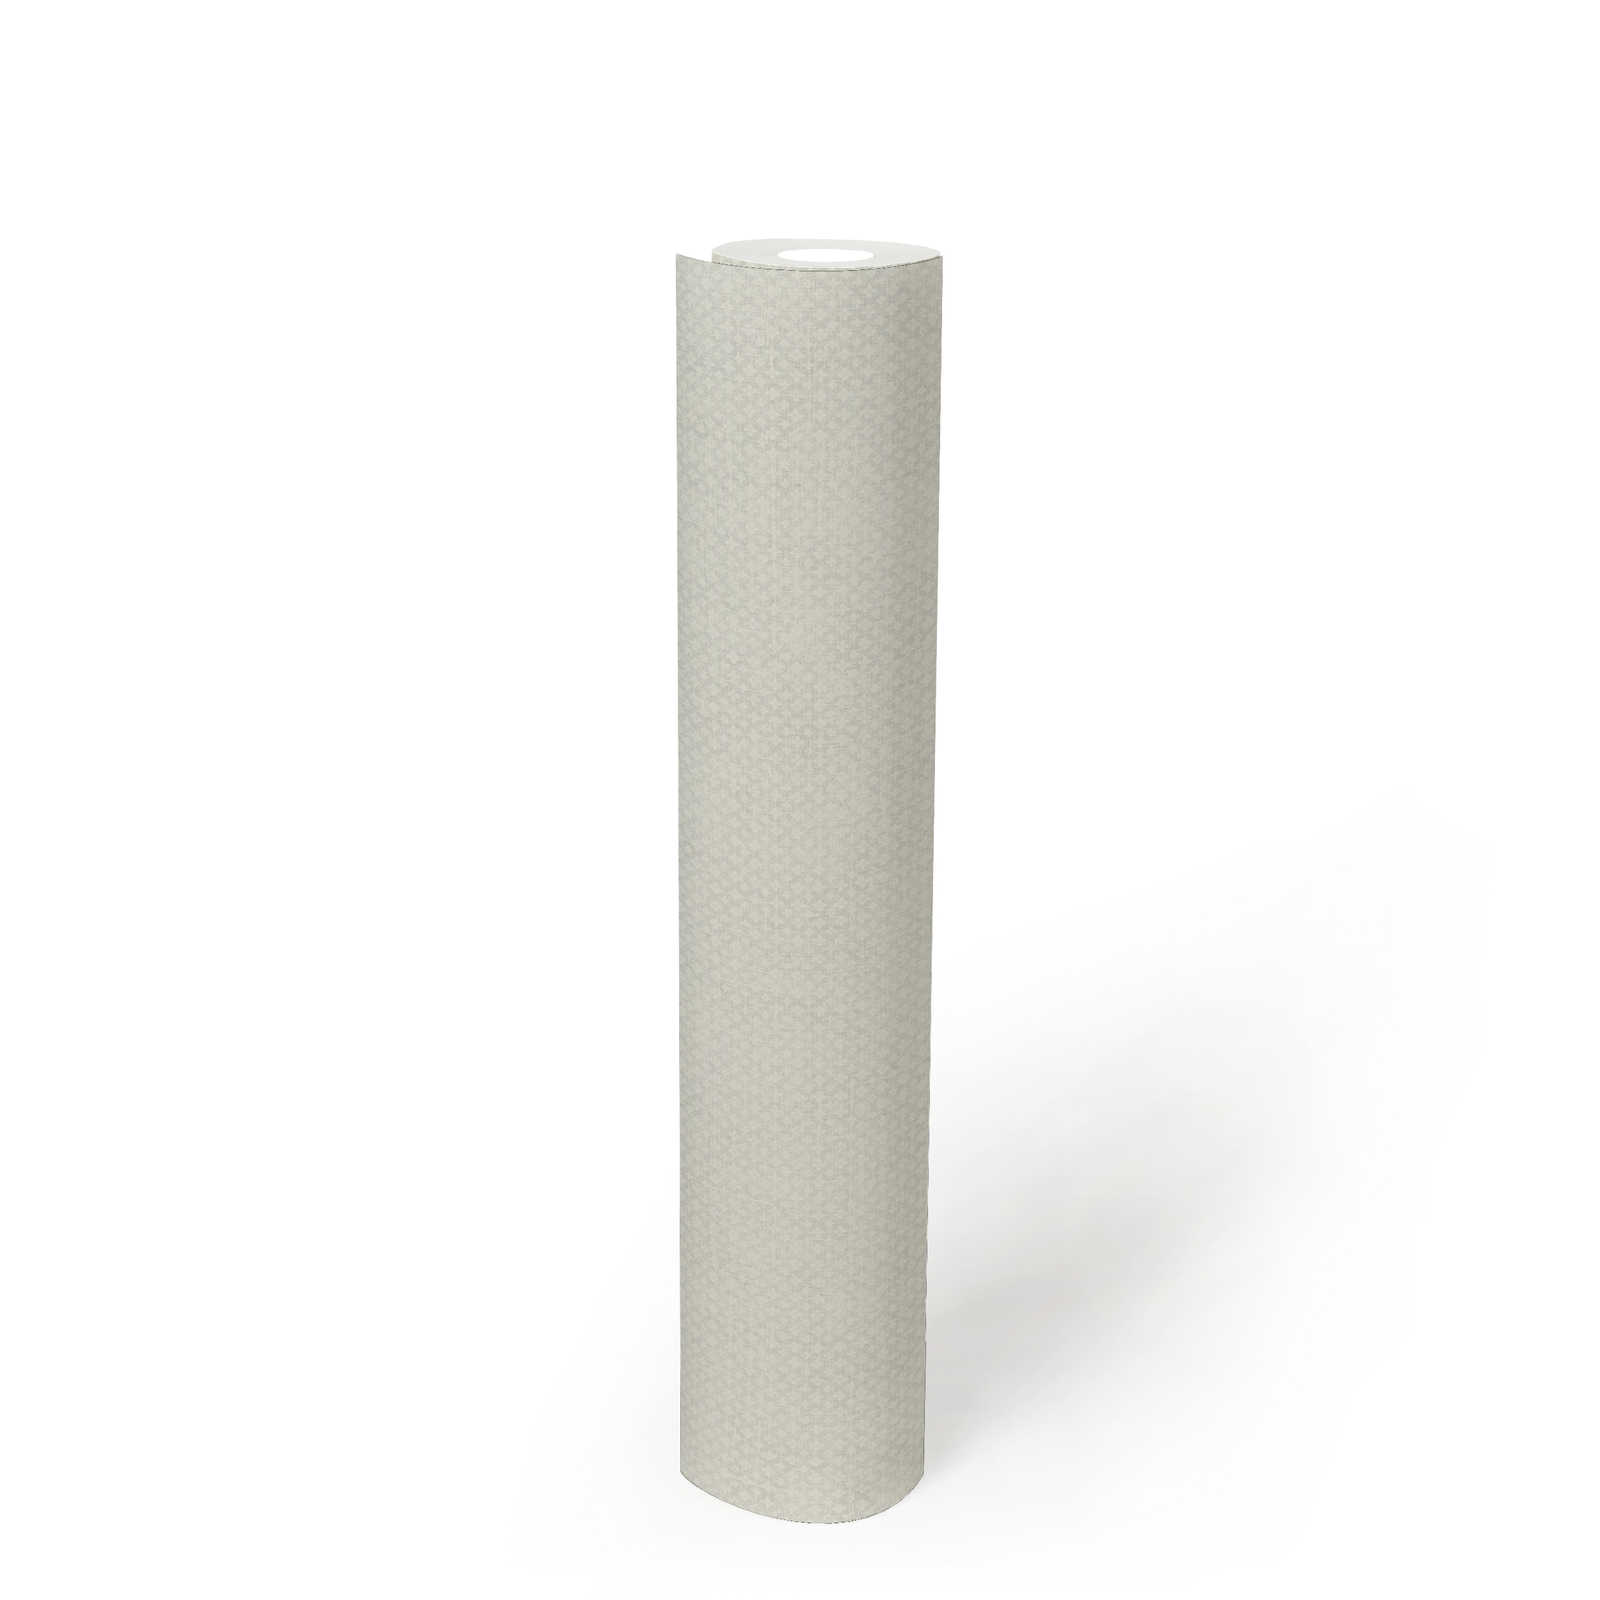             Vliestapete mit feinem Strukturmuster – Grau, Weiß
        